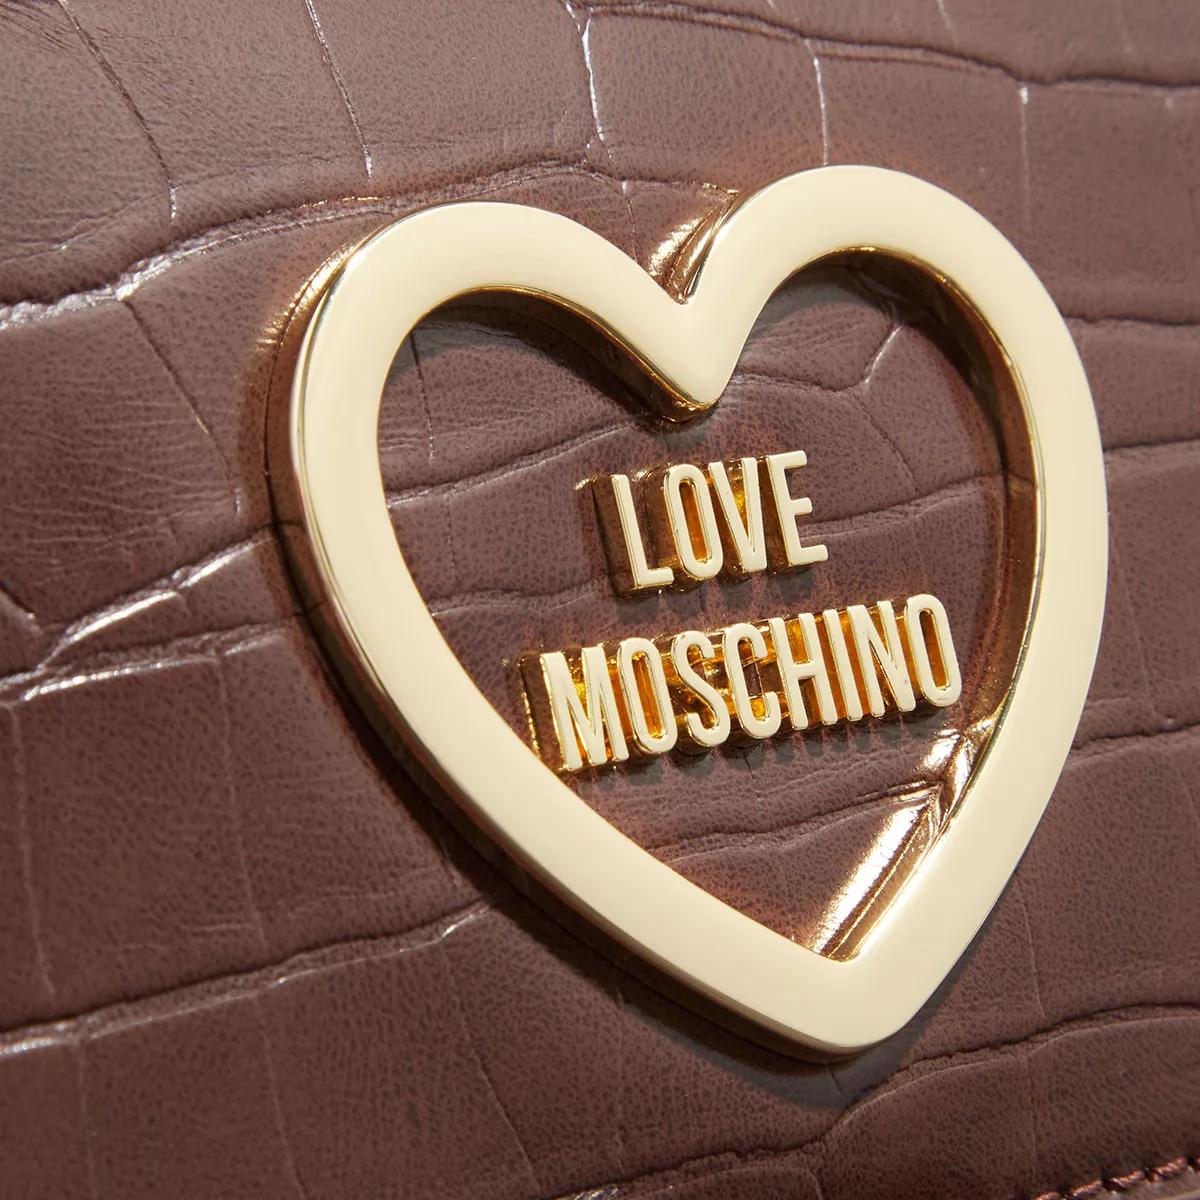 Love Moschino Satchels Hug in bruin